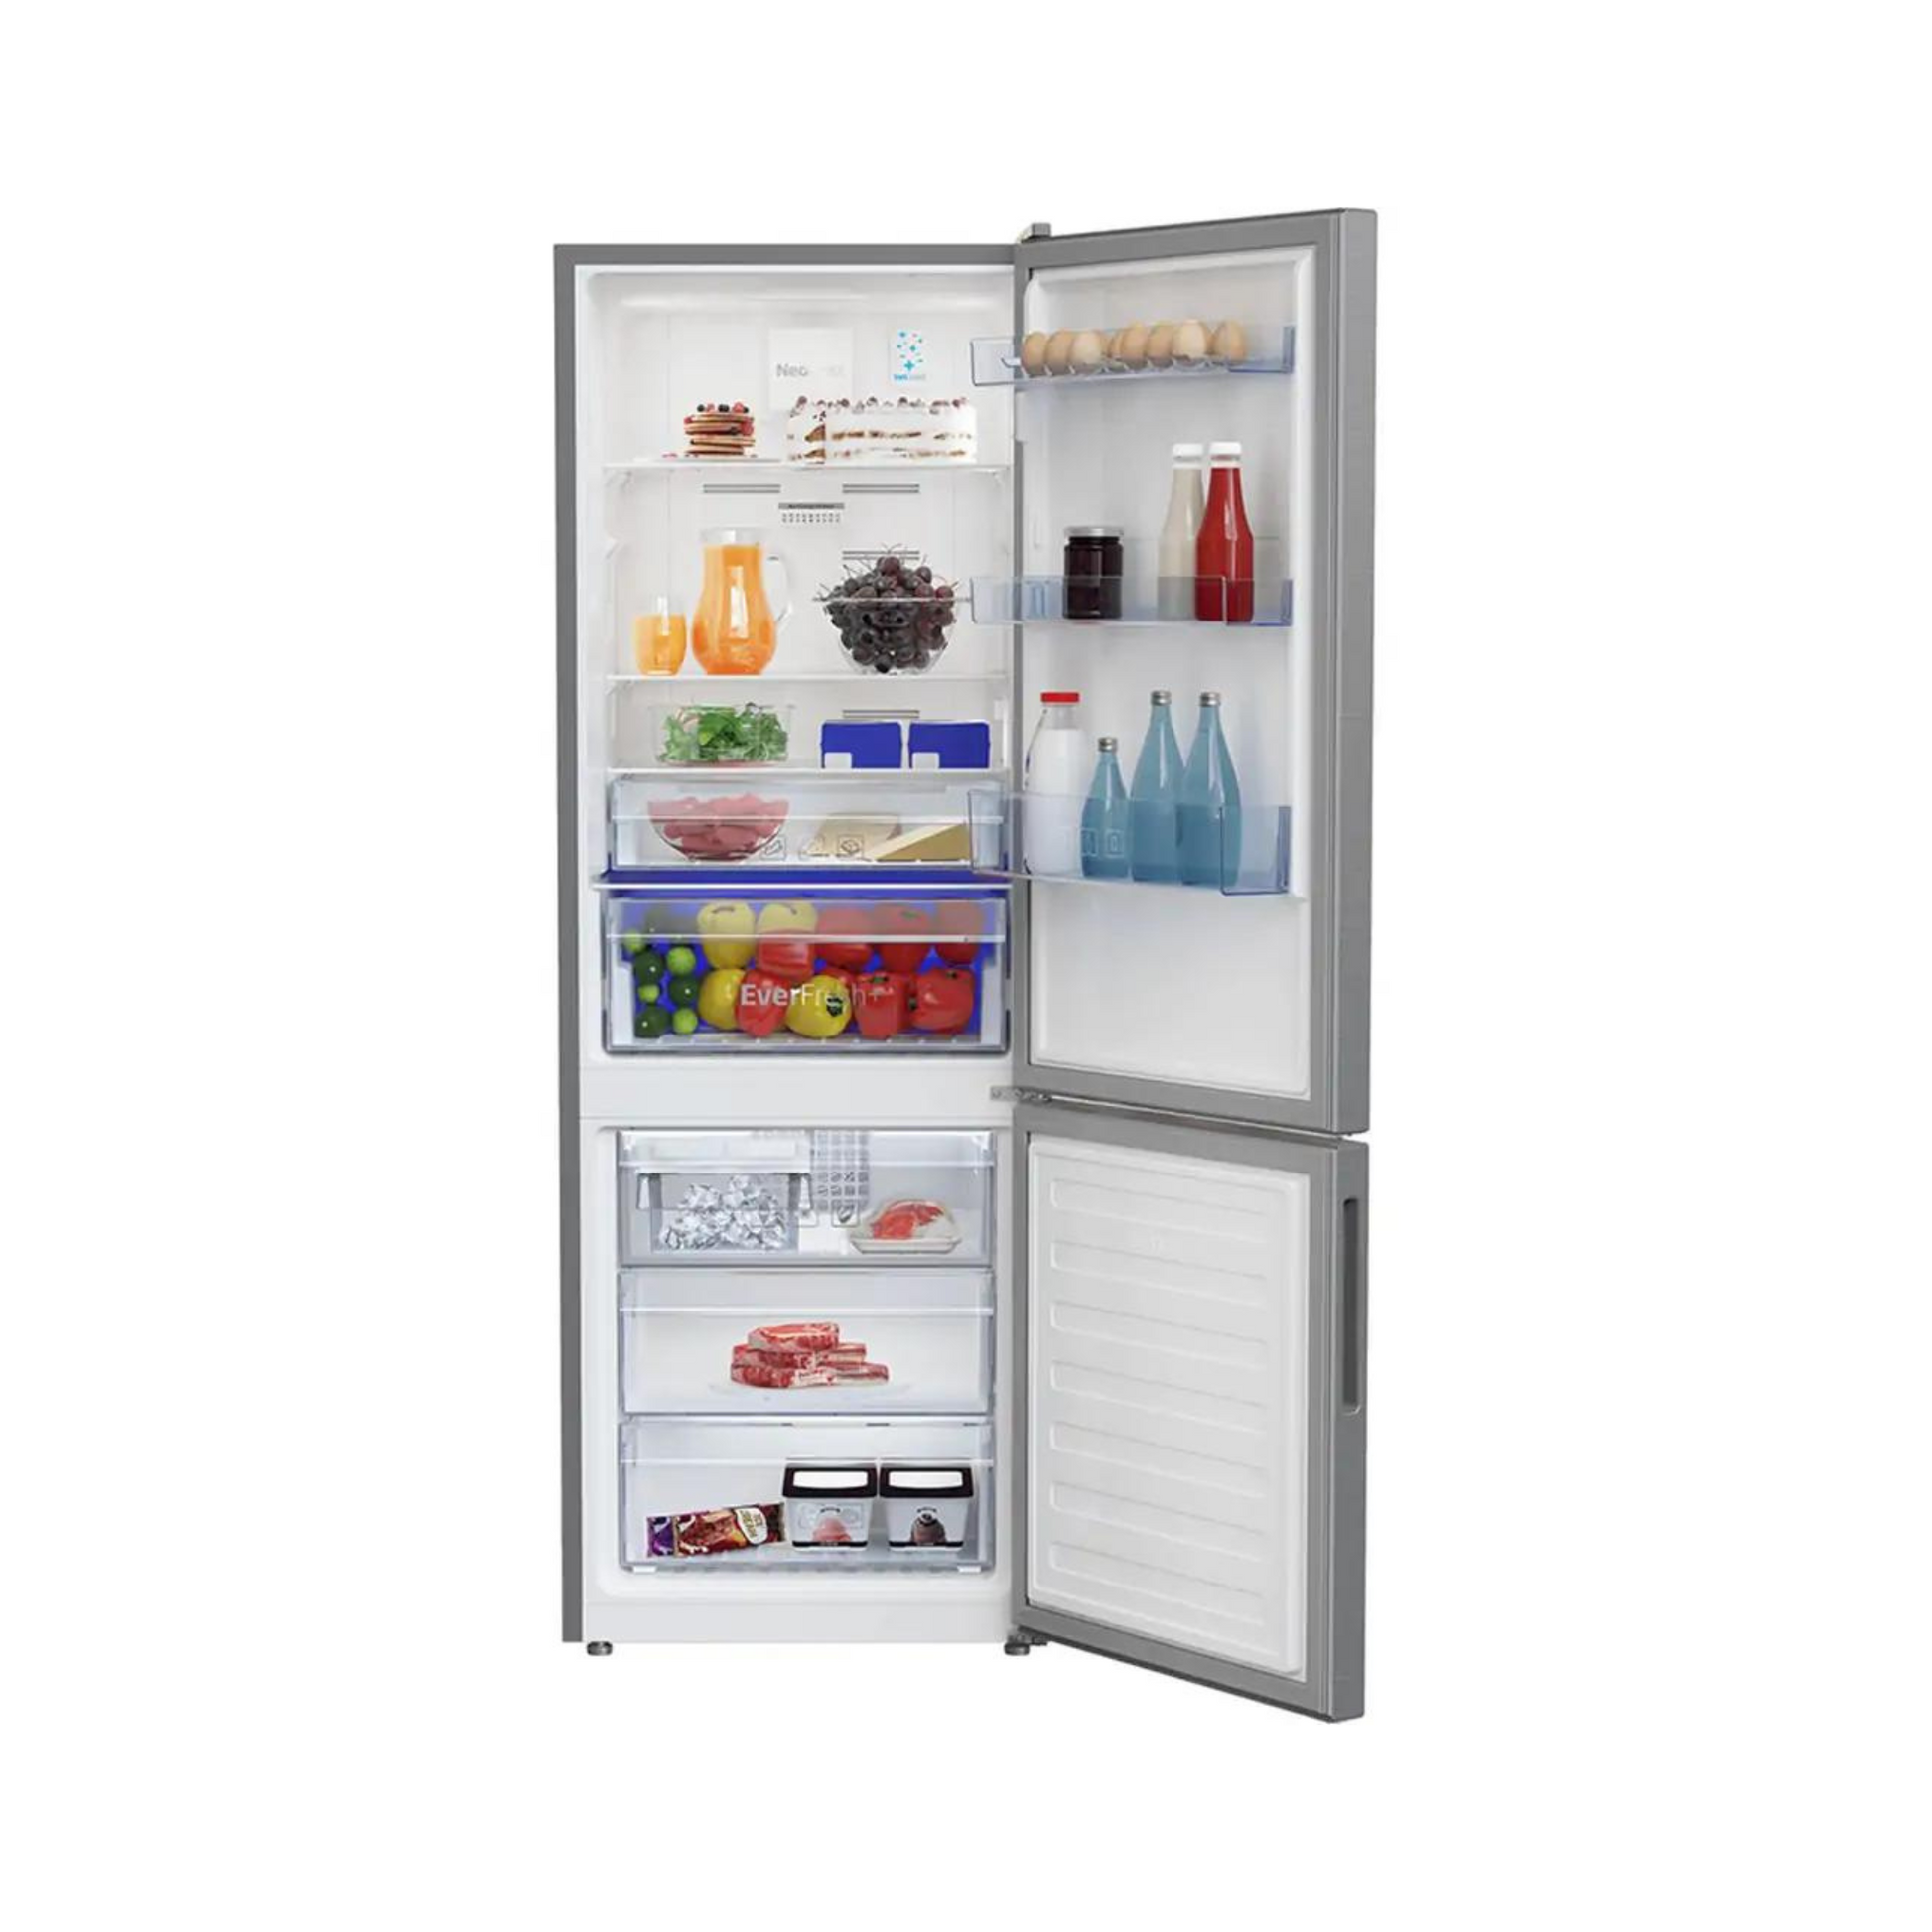 Beko 323L Inverter Double Door Refrigerator, RCNT340E50VZX